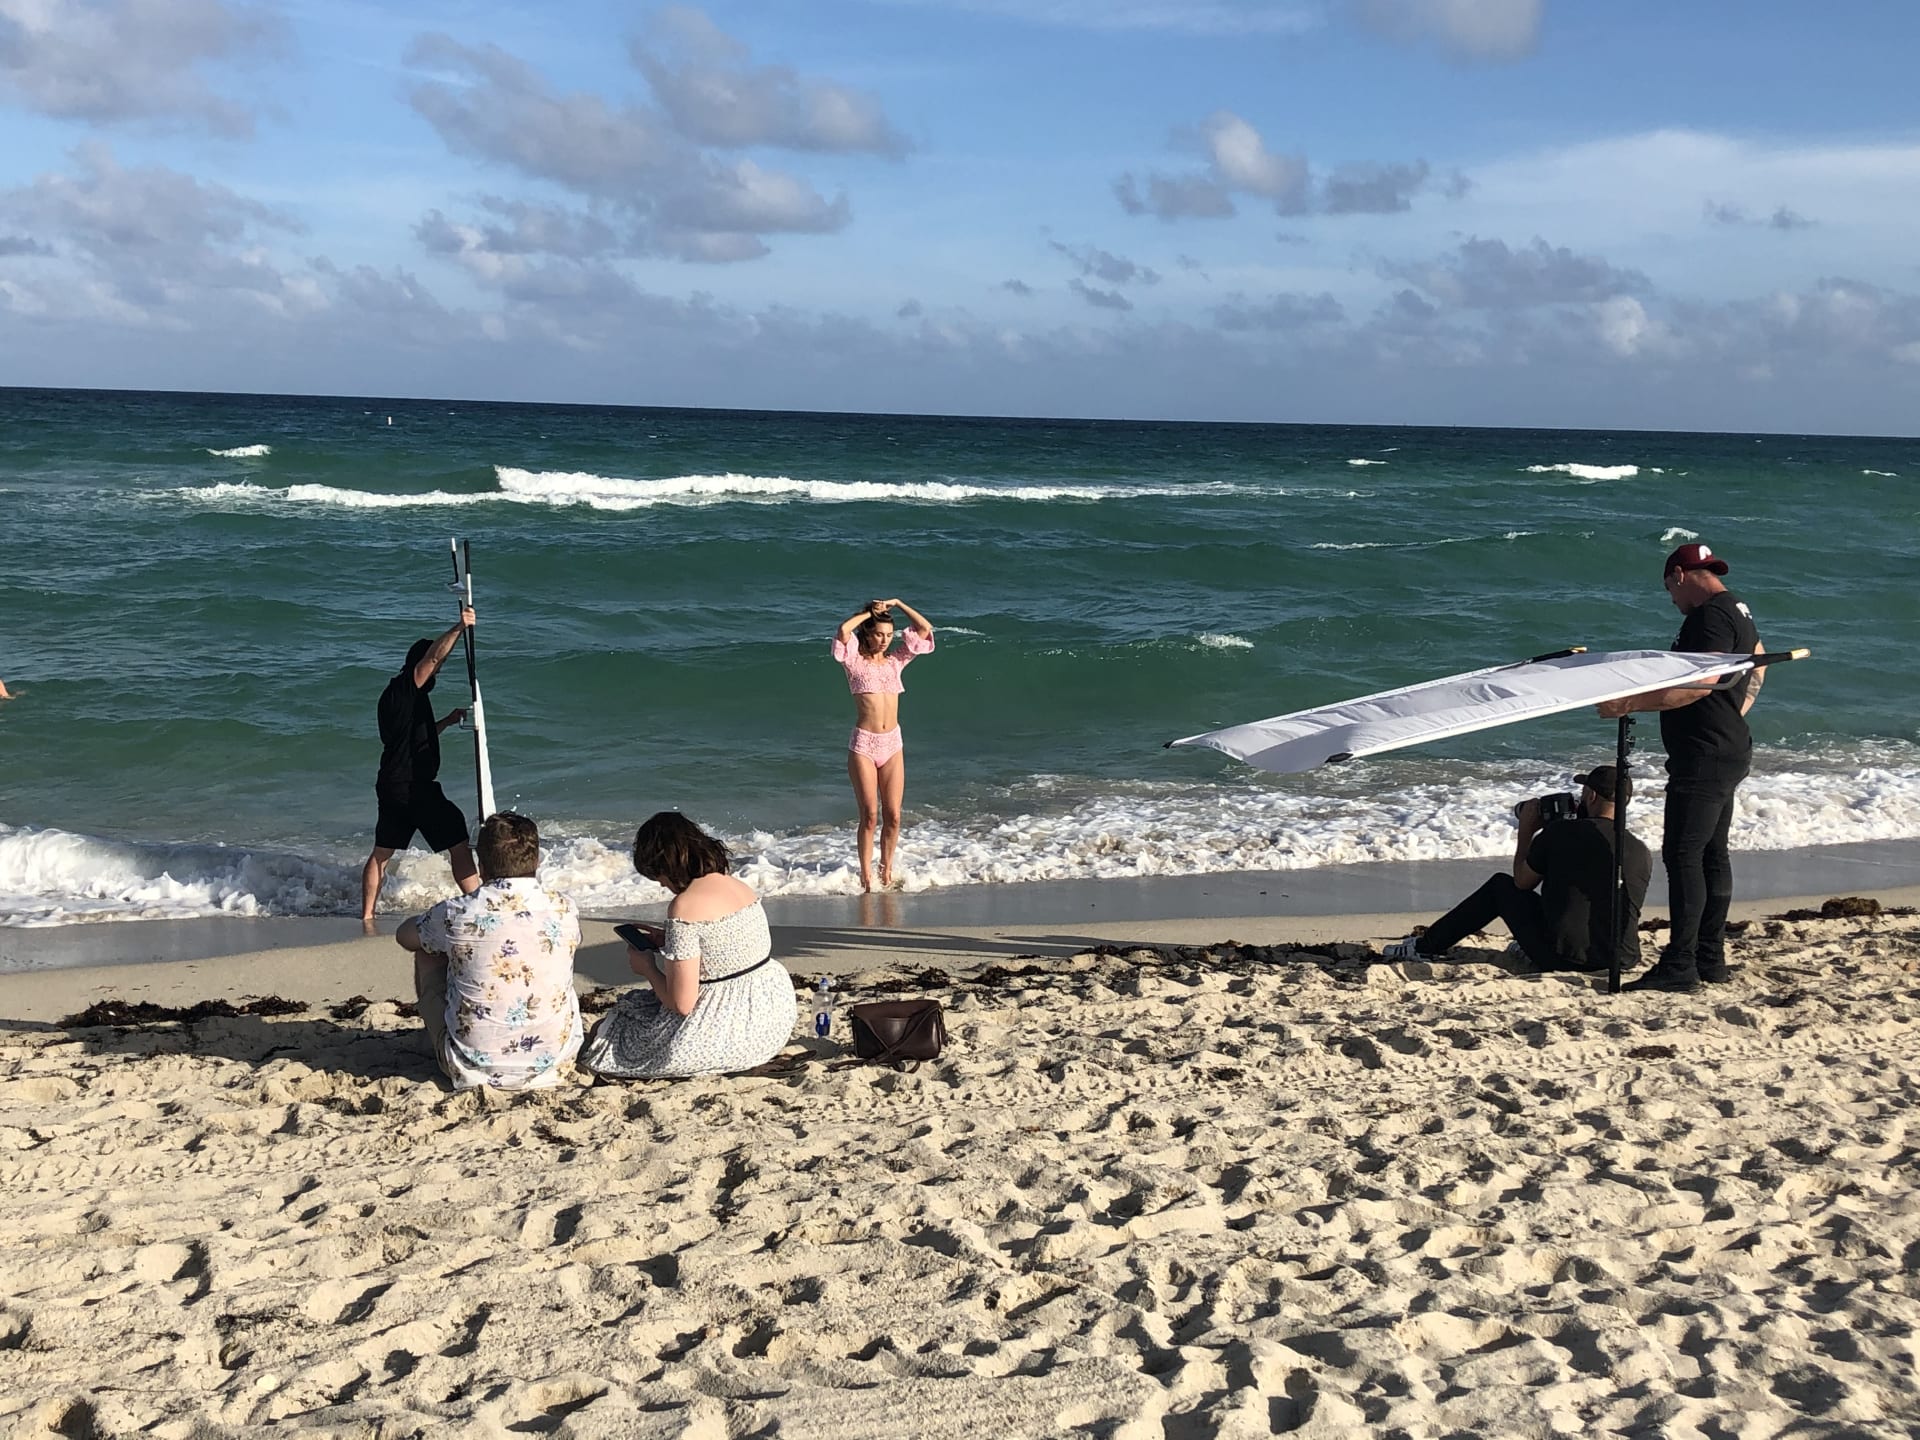 Pláže Miami Beach